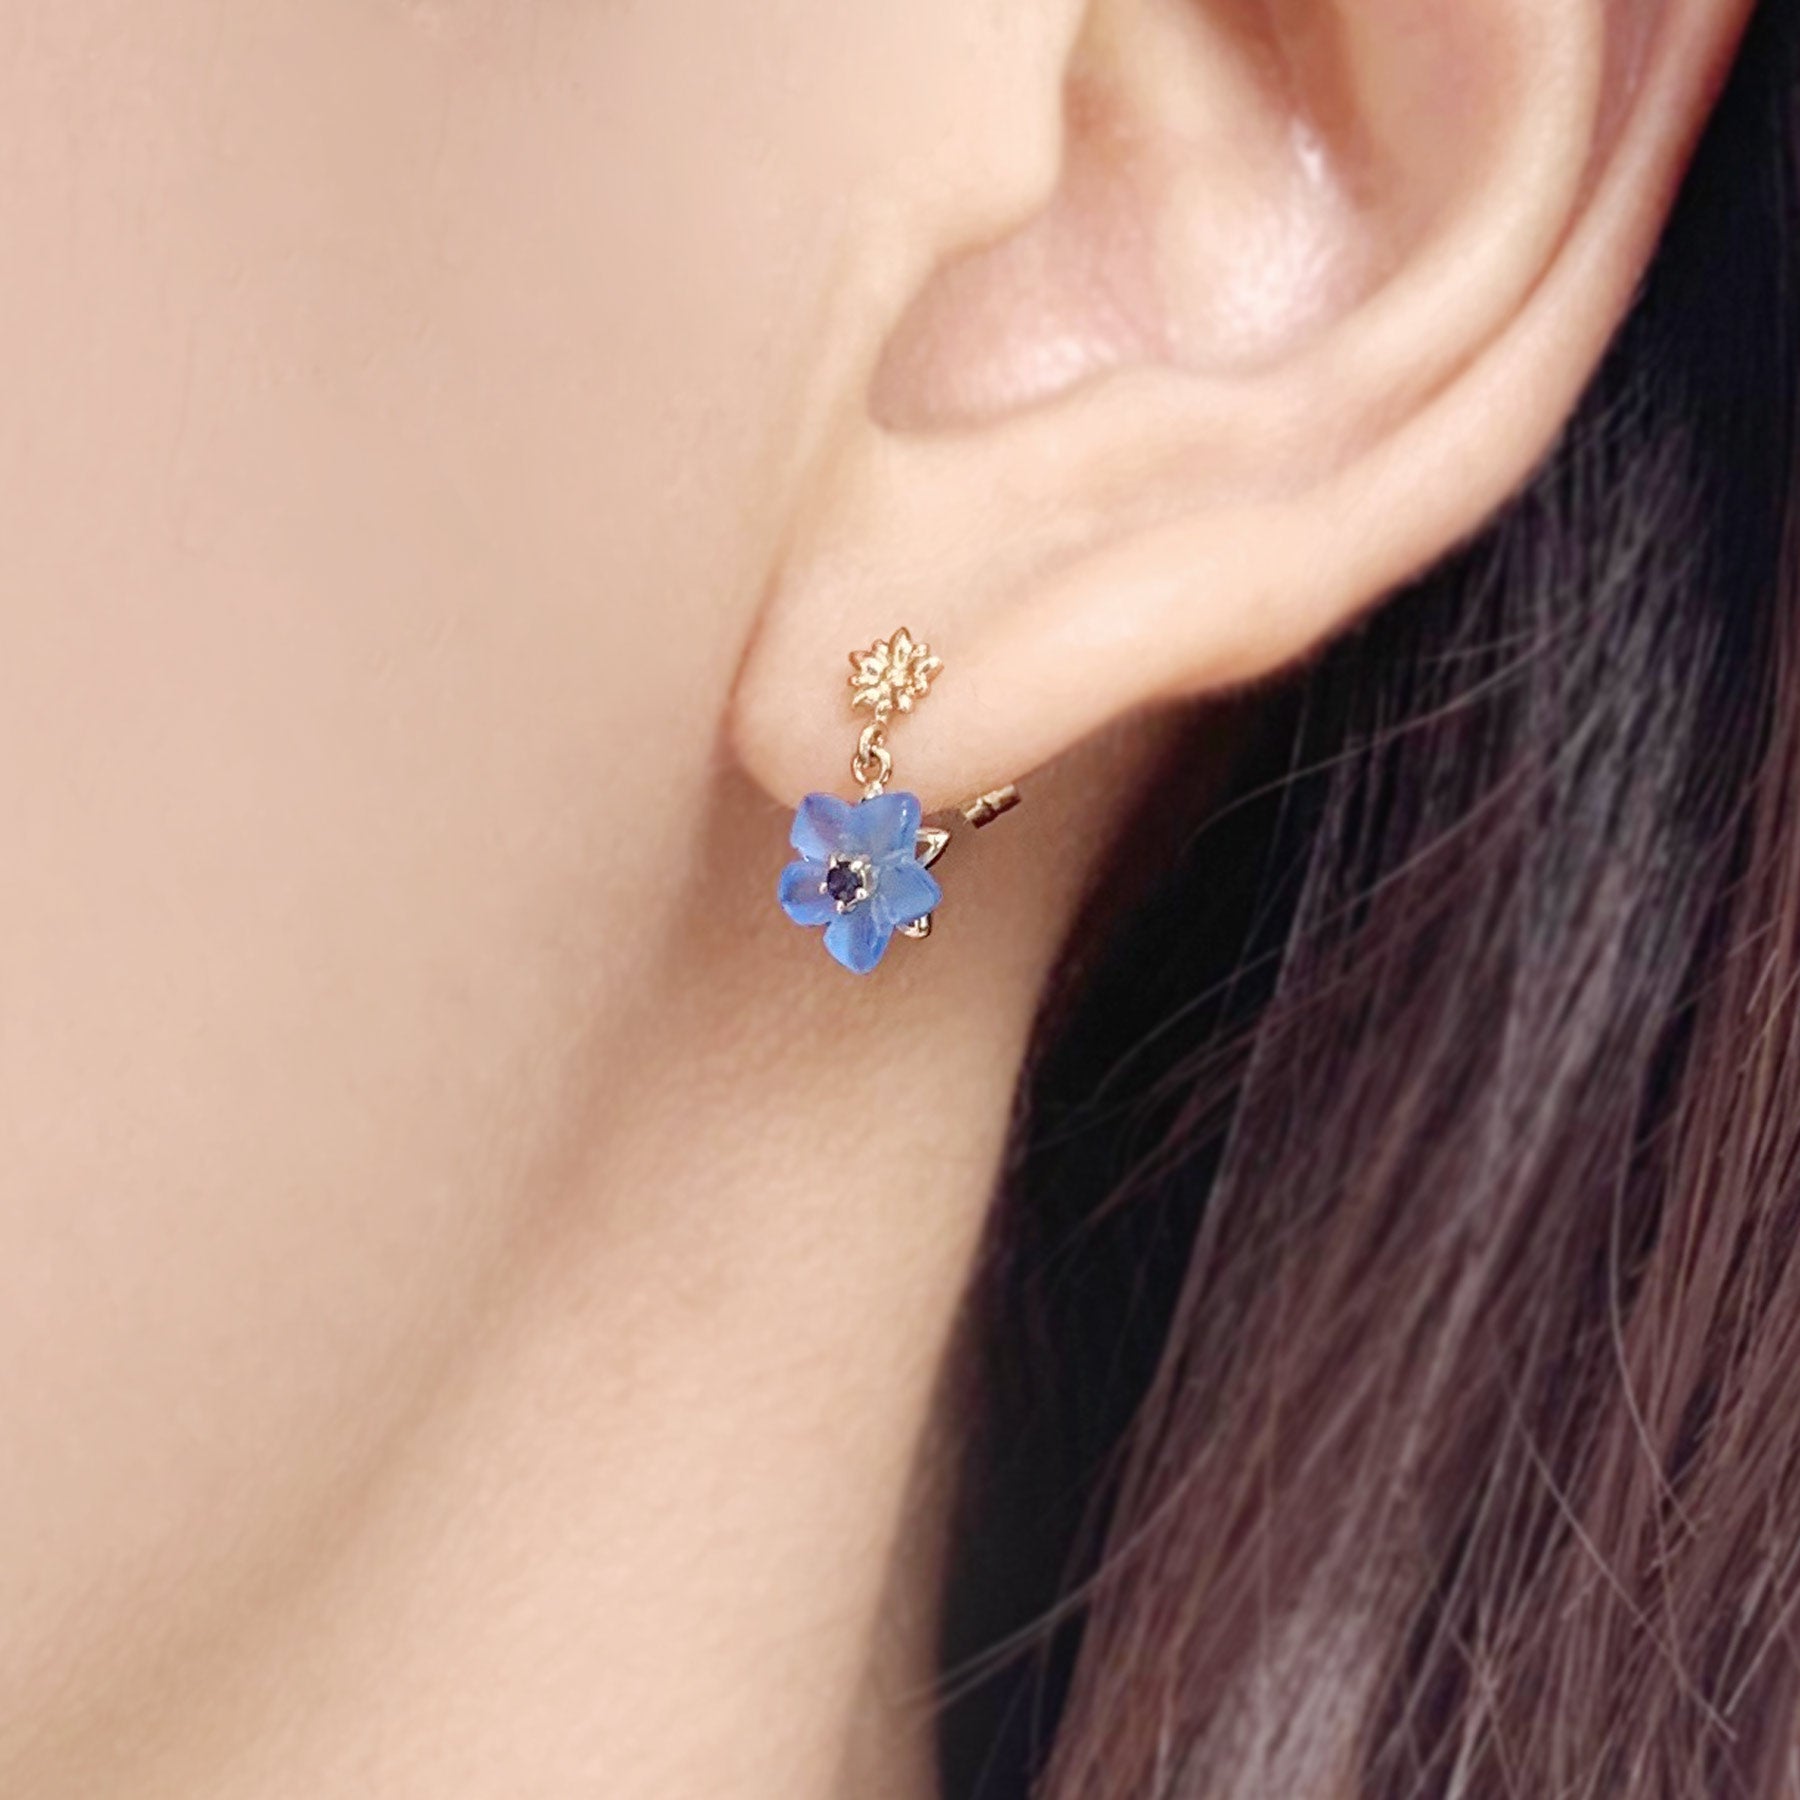 [Birth Flower Jewelry] September Gentian Earrings - Model Image